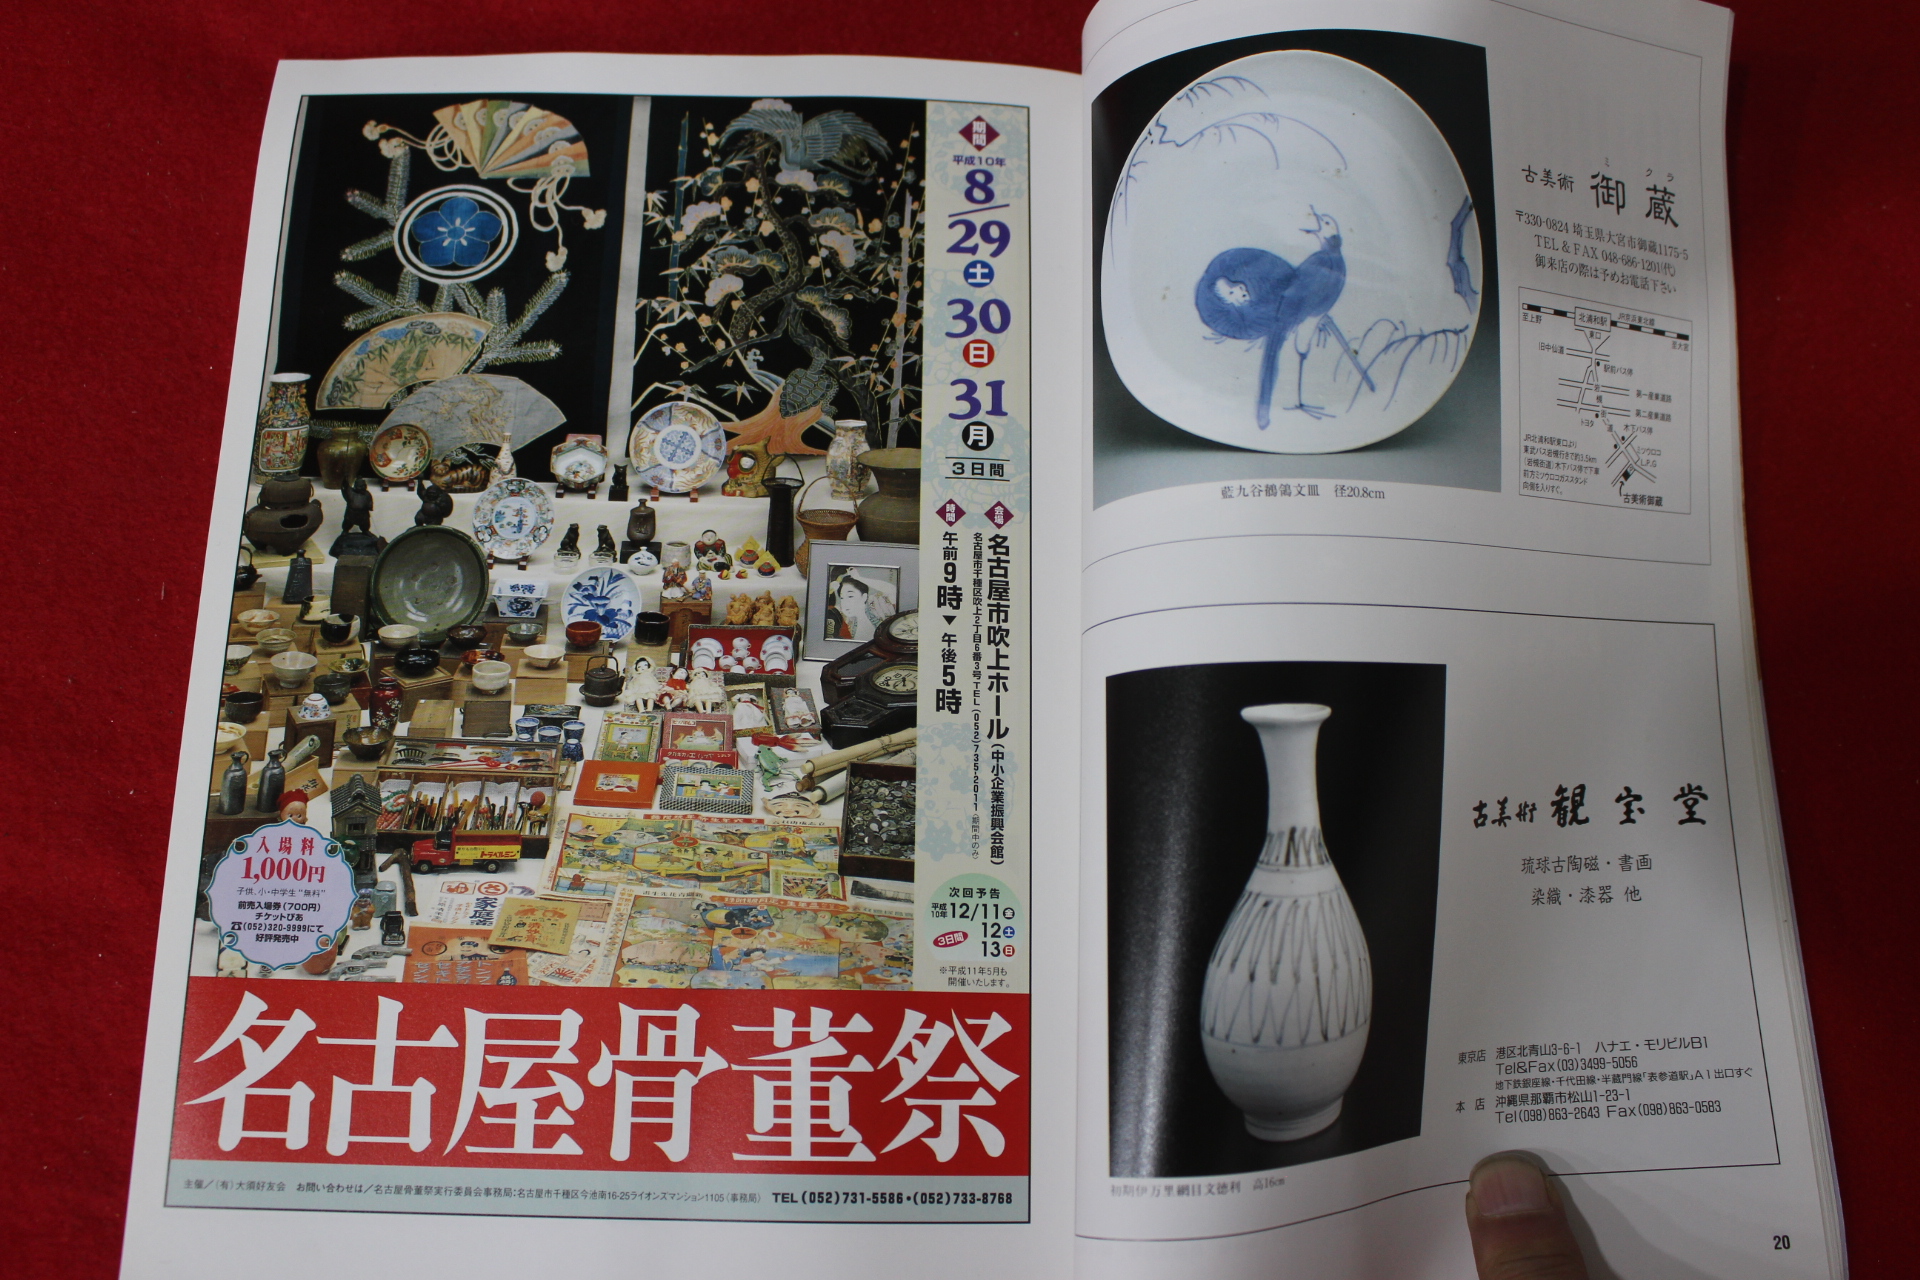 1998년 일본 고미술잡지